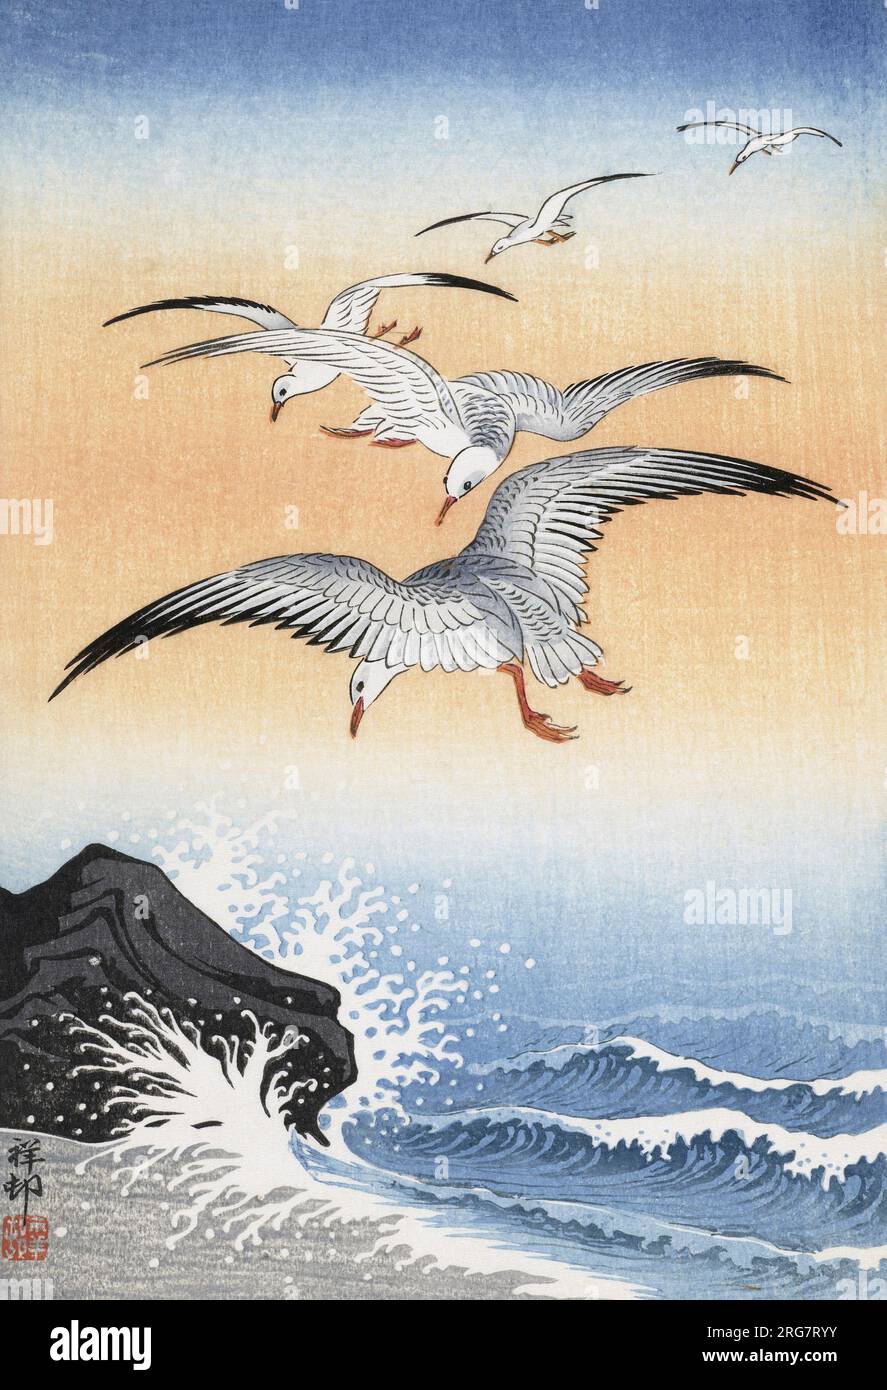 Five Seagulls Above a turbulent Sea de l'artiste japonais Ohara Koson, 1877 - 1945. Ohara Koson faisait partie du Shin-Hanga, ou mouvement des nouvelles gravures. Banque D'Images